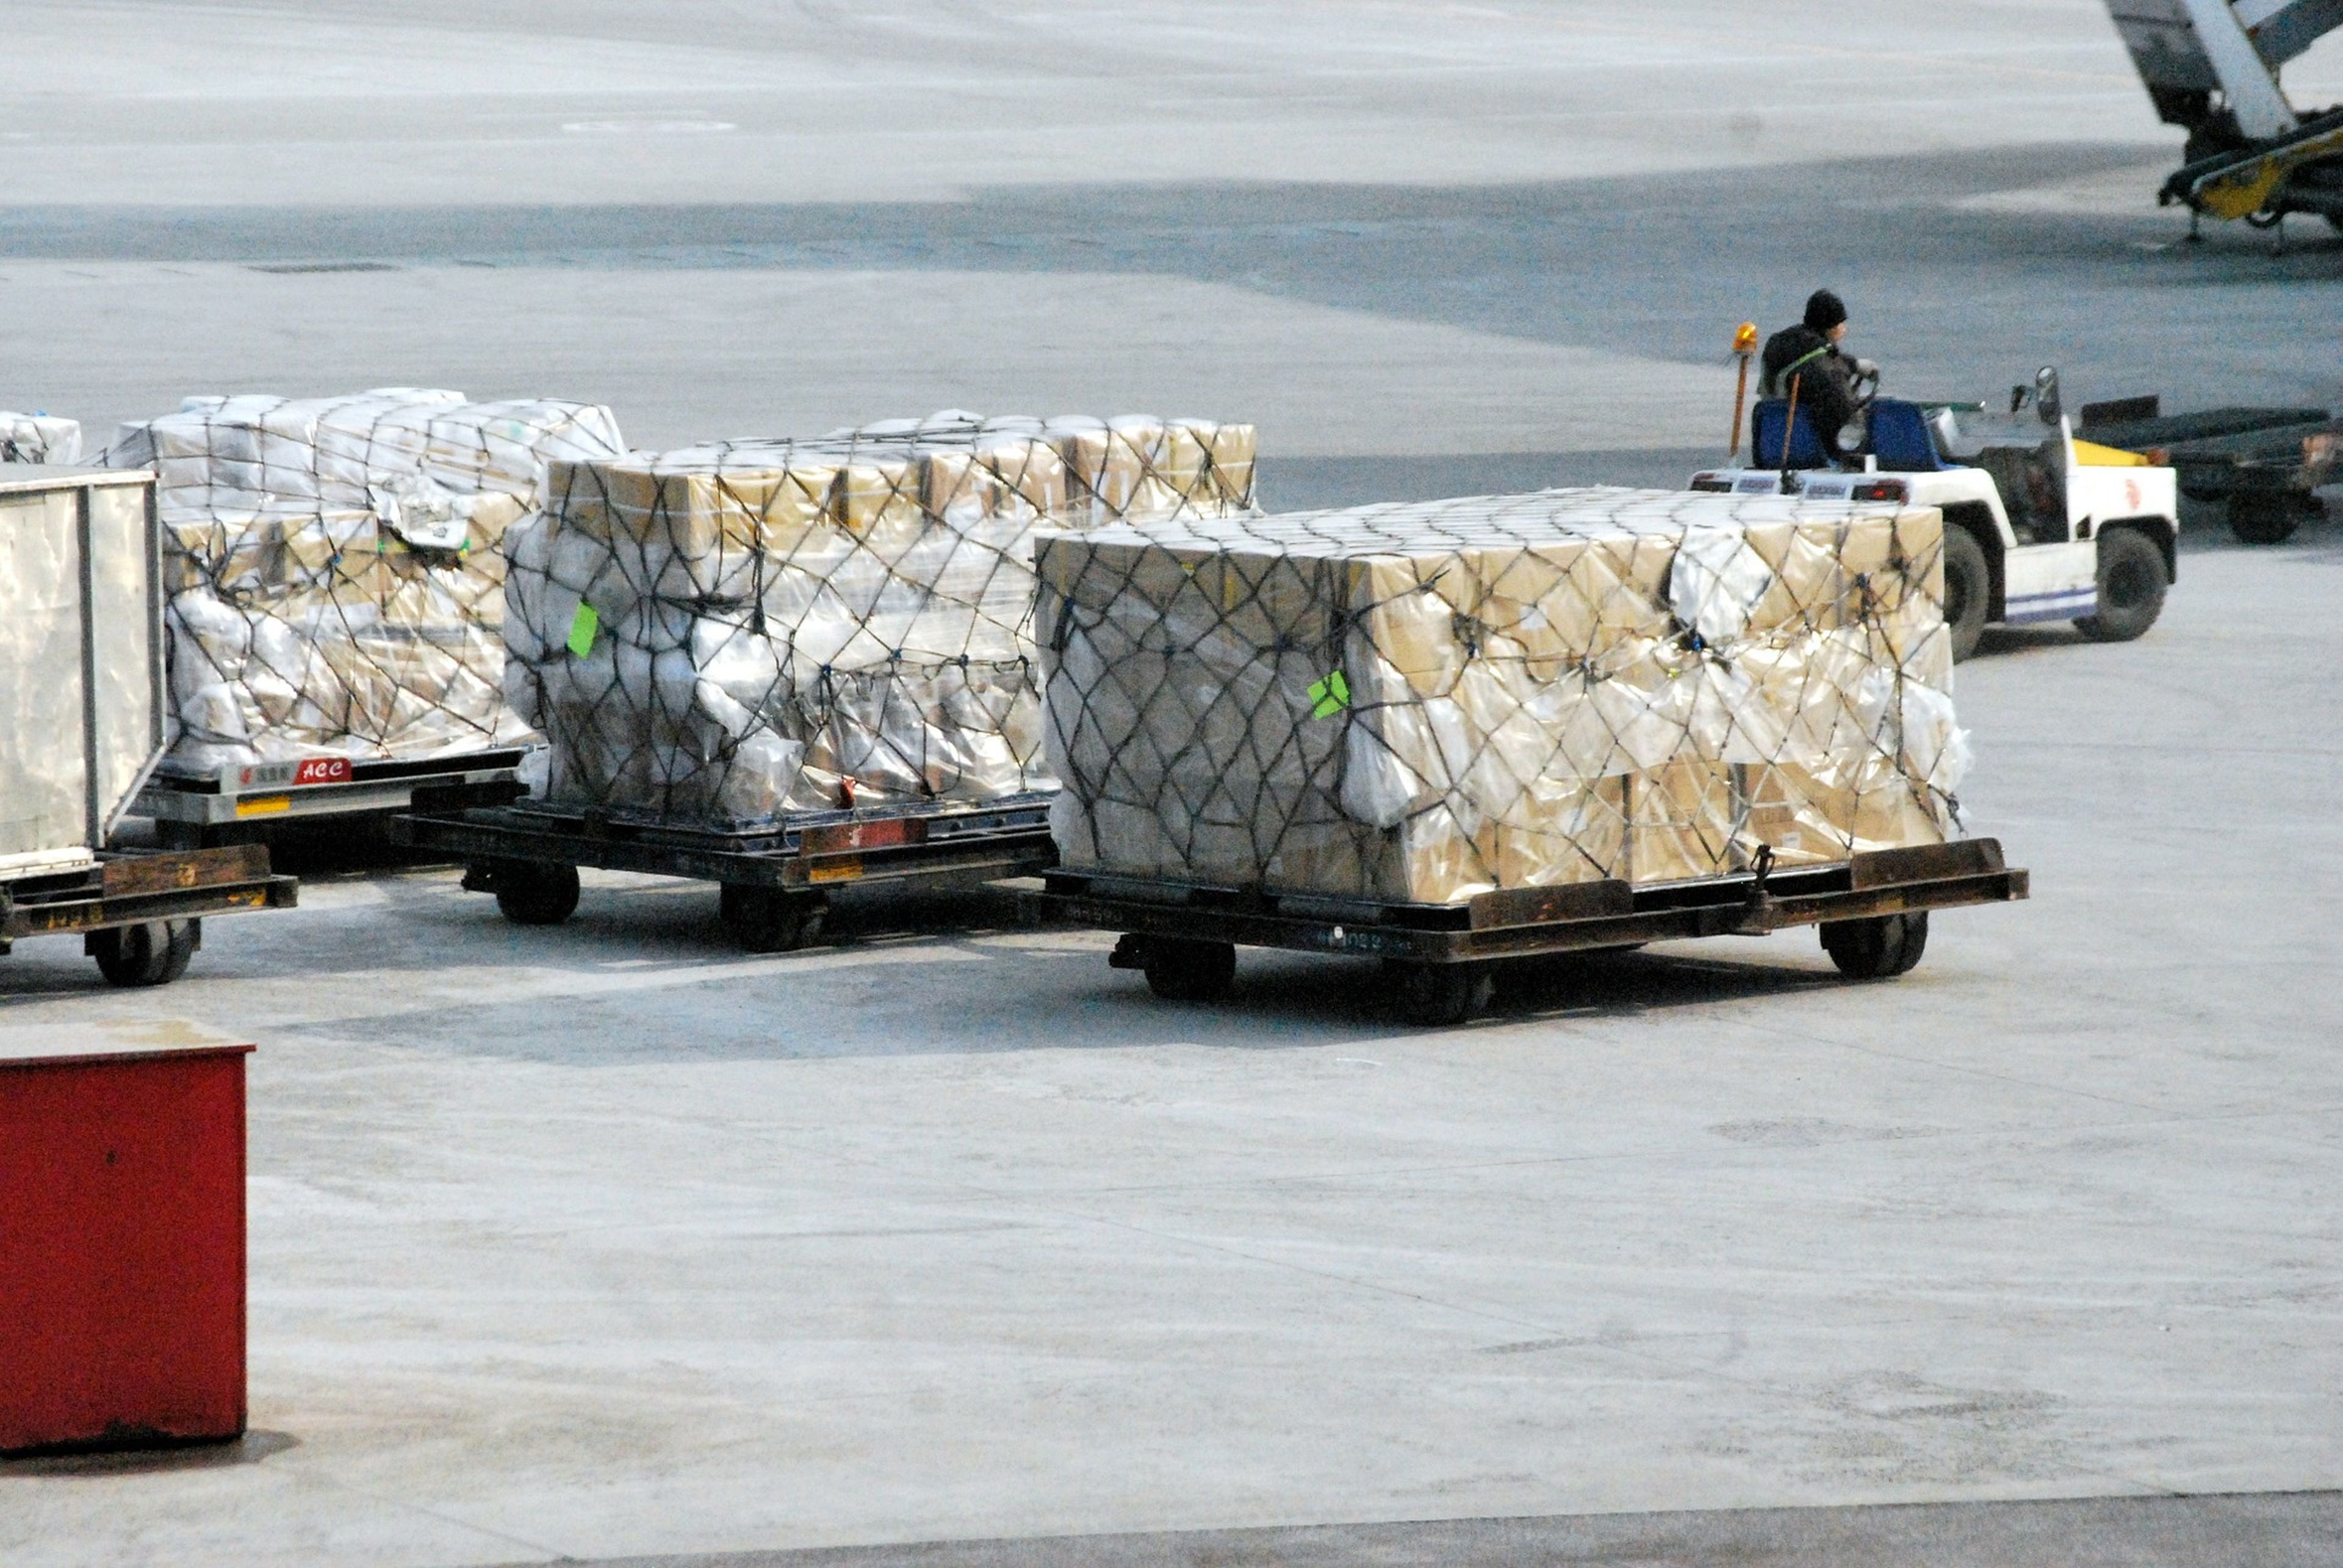 Varias cajas son transportadas en un aeropuerto.